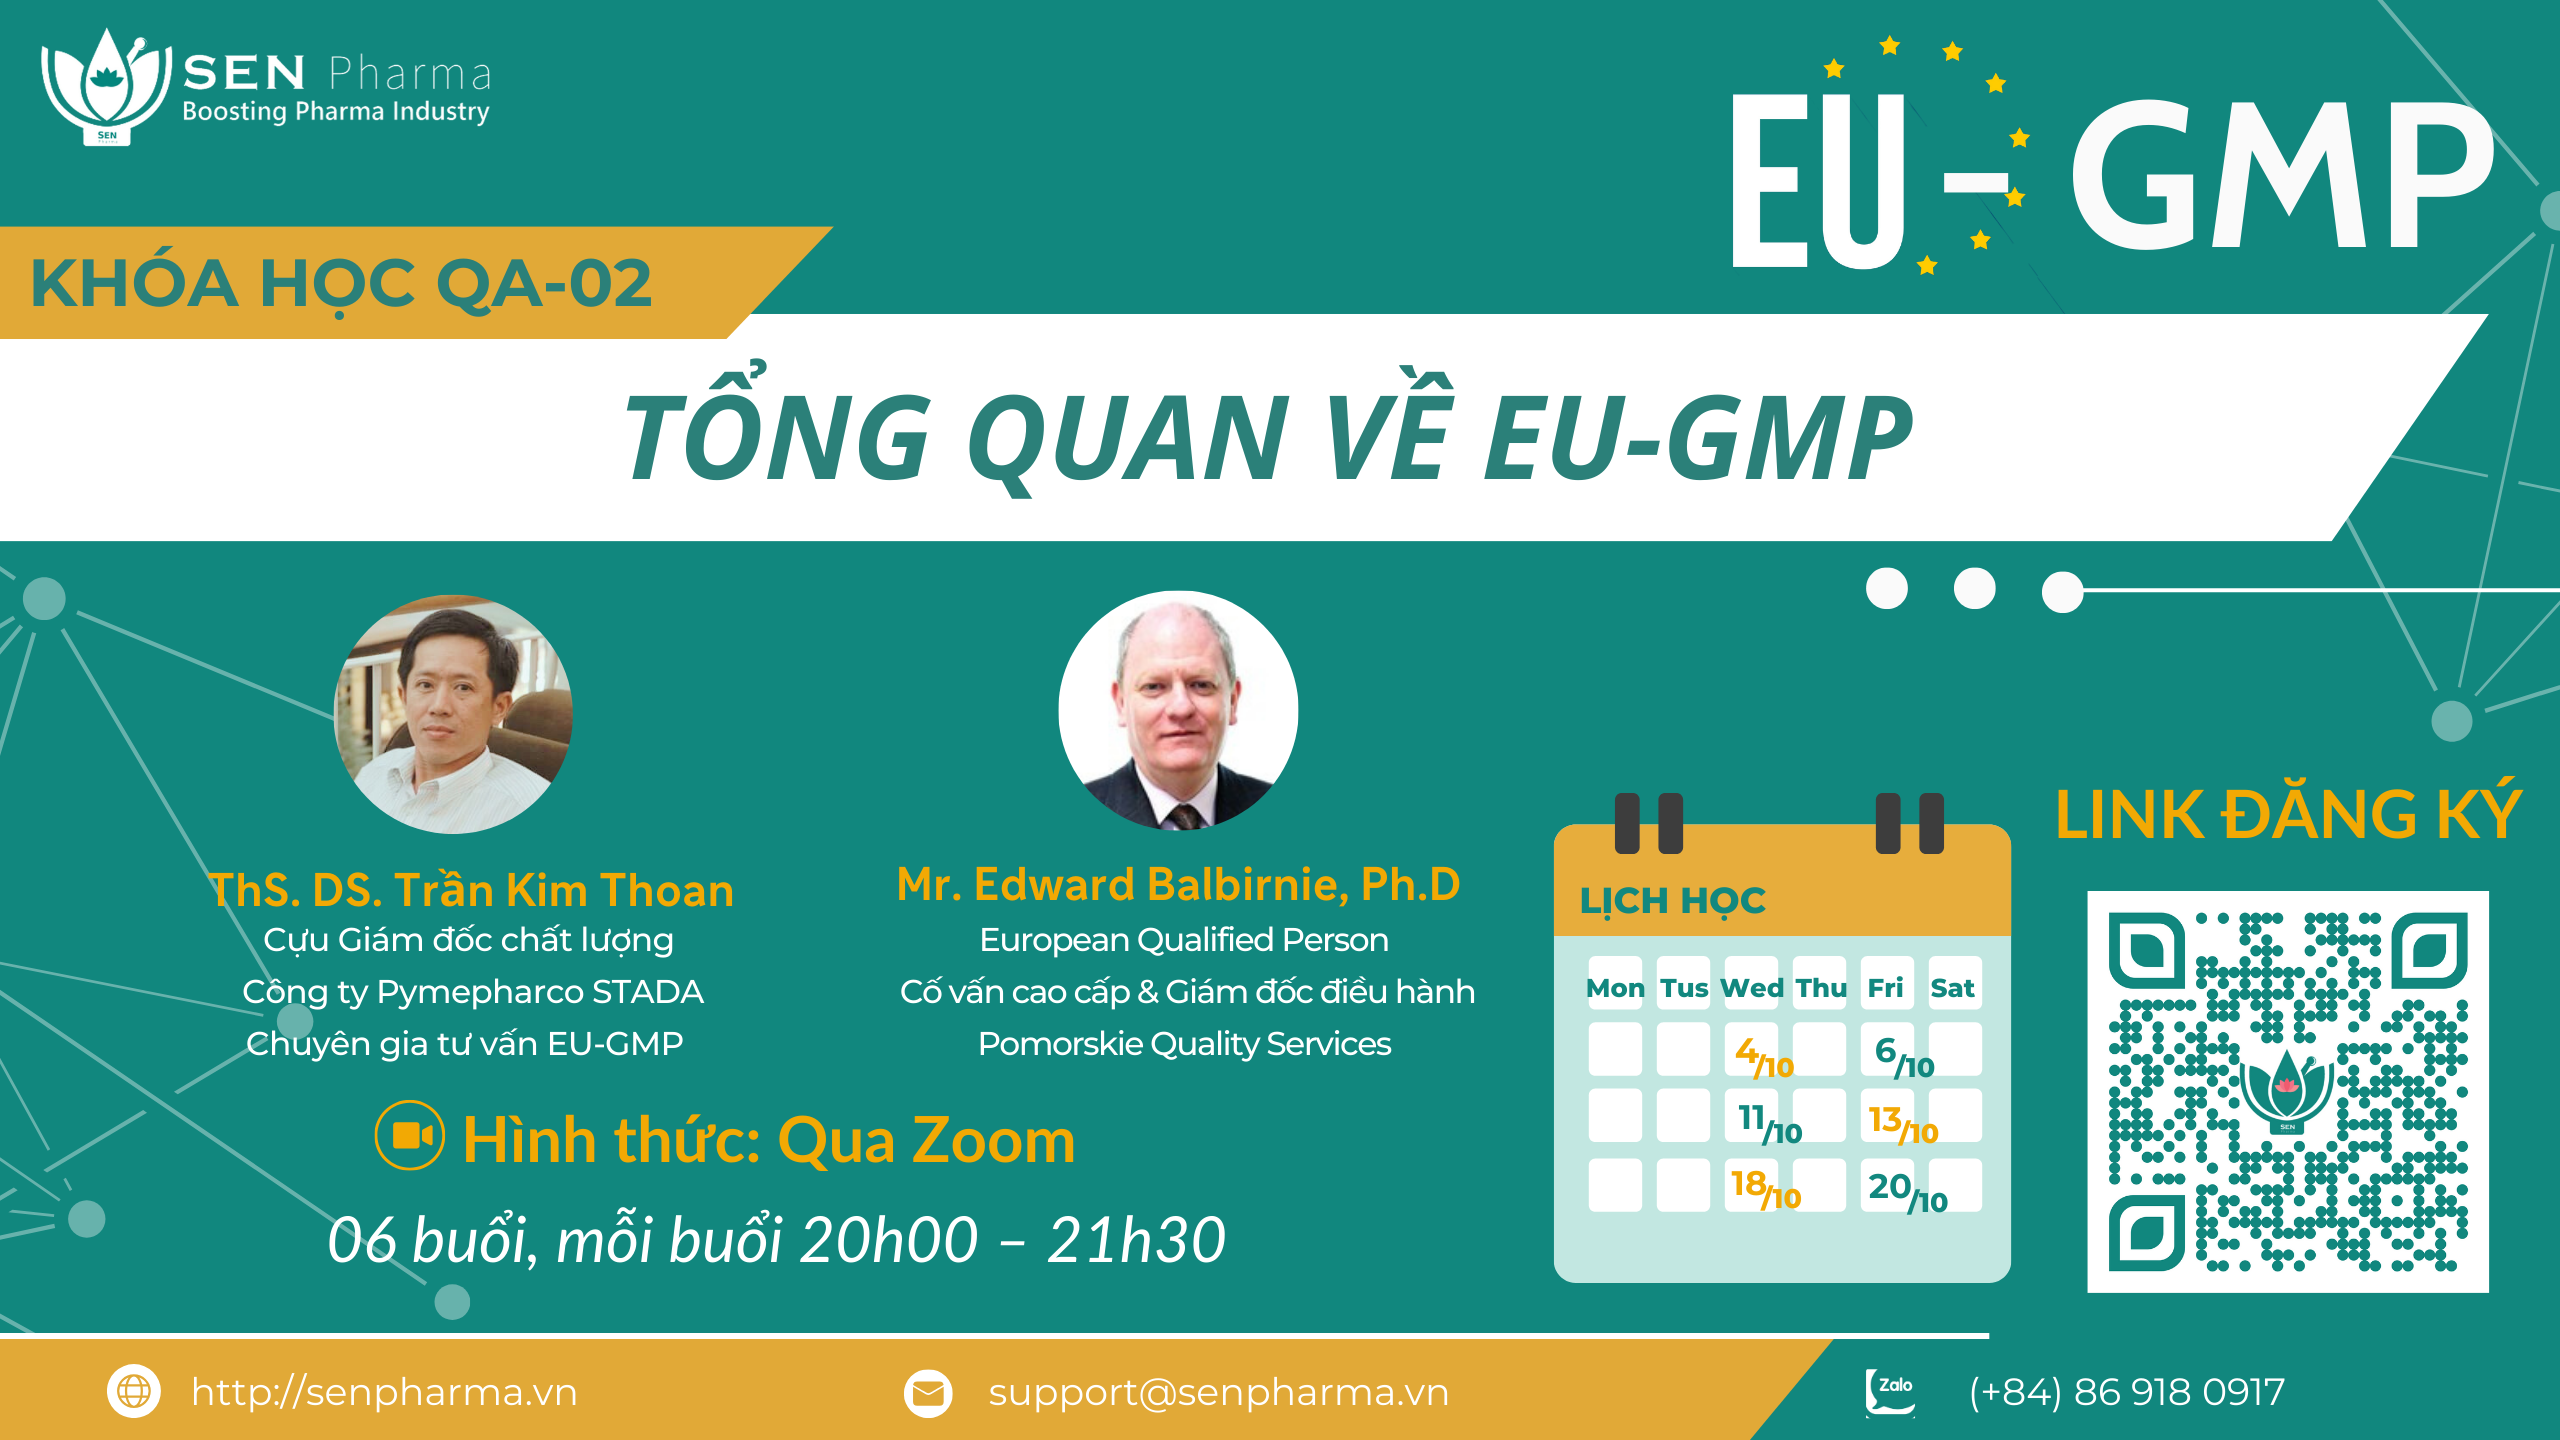 <b>Khóa học QA-02: Tổng quan về EU-GMP – Profile giảng viên</b>